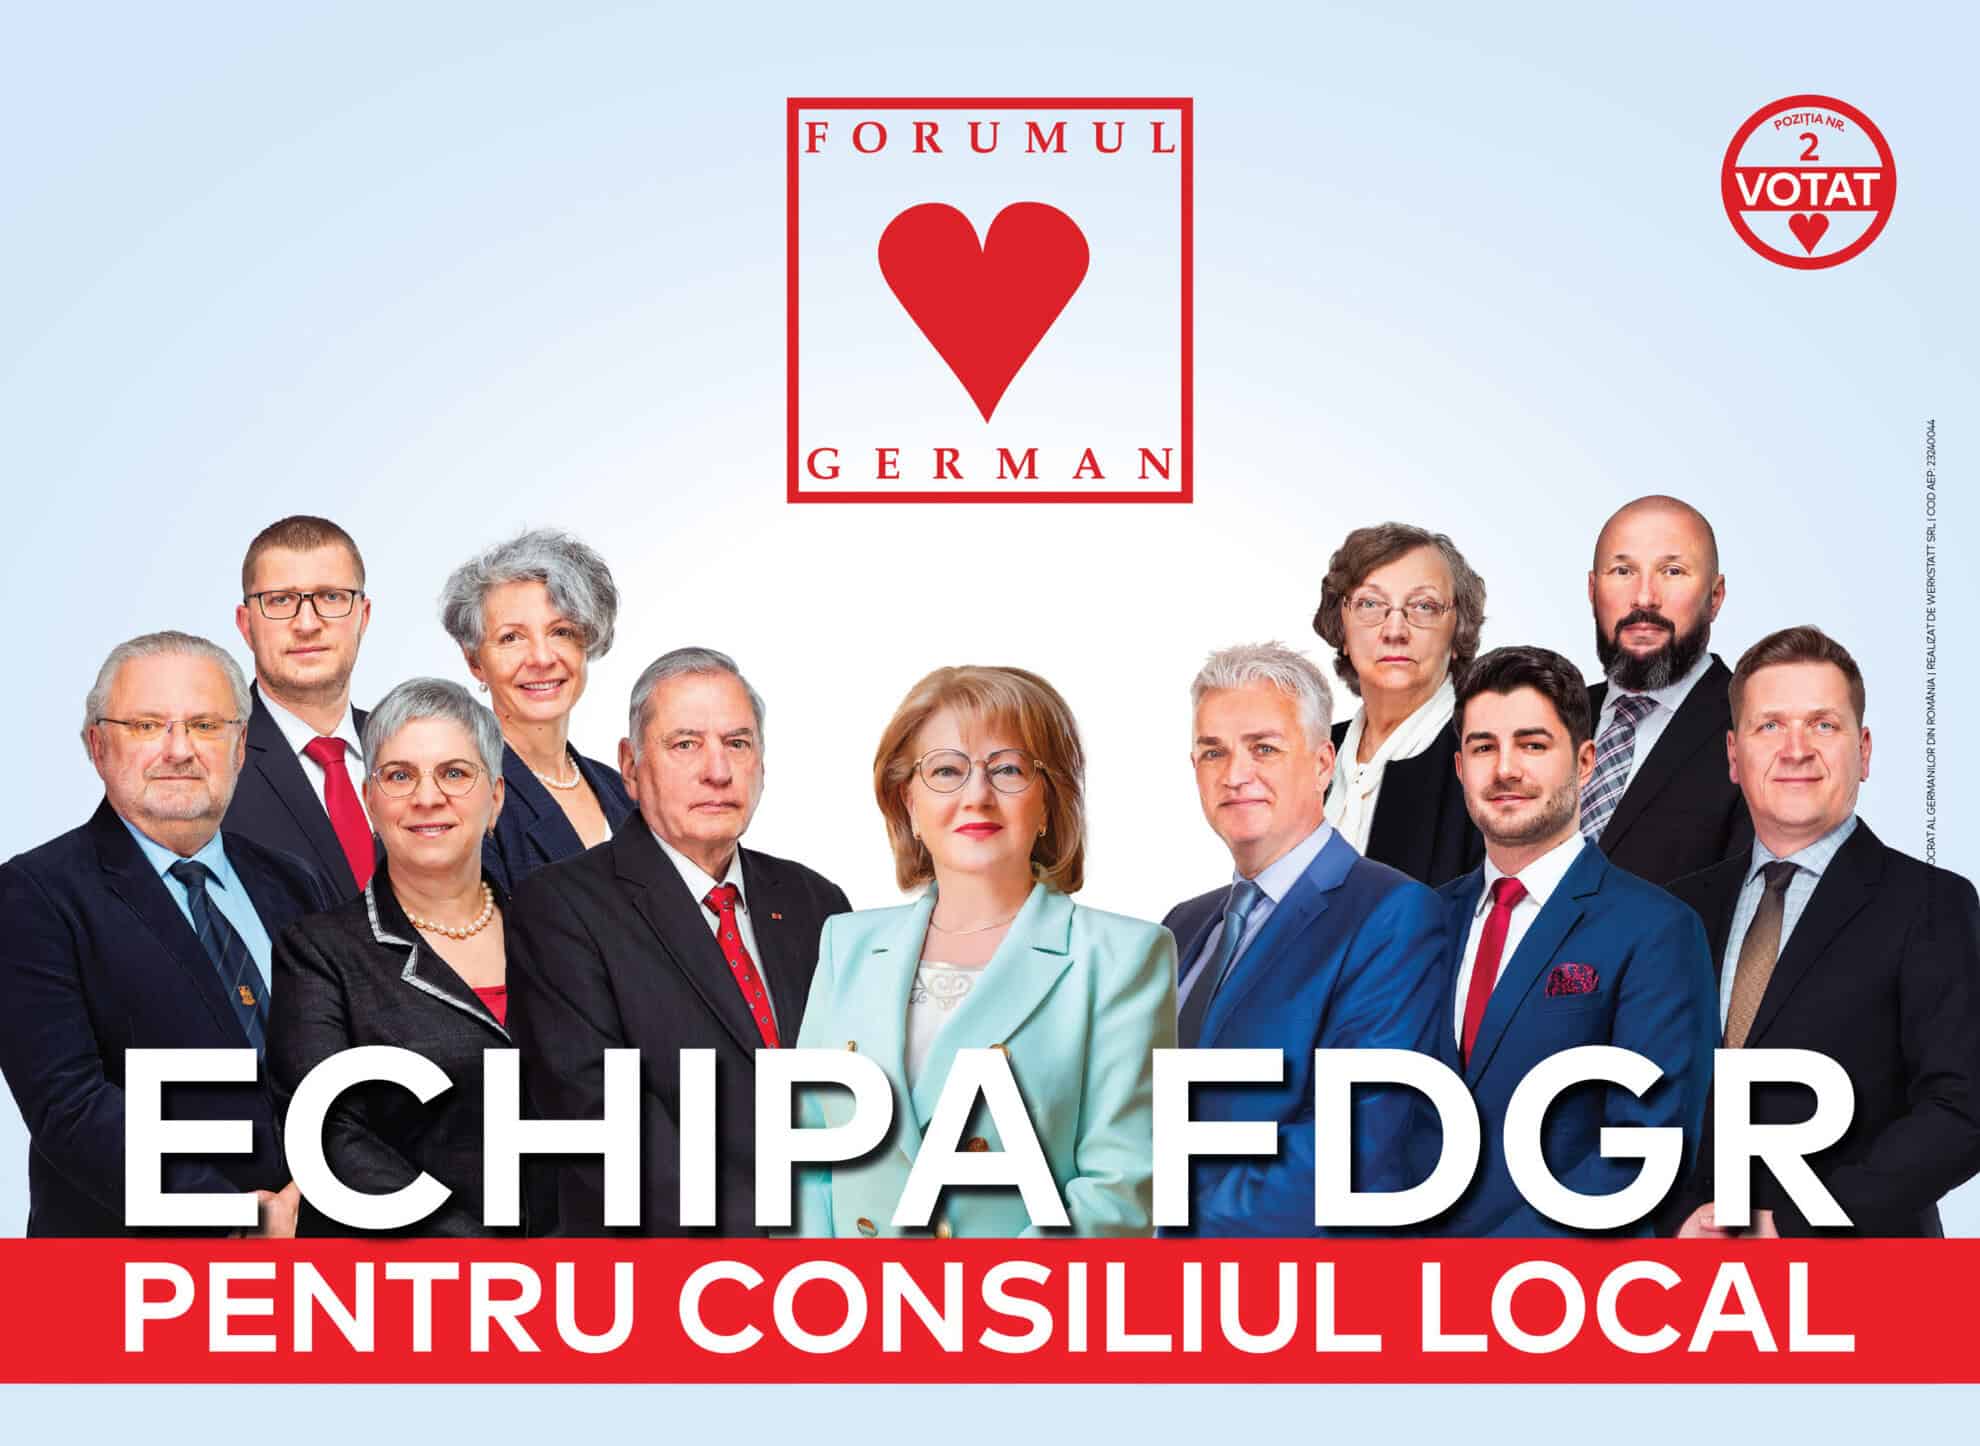 echipa fdgr, poziția 2 pe buletinele de vot. duminică alegeți viitorul orașului nostru!